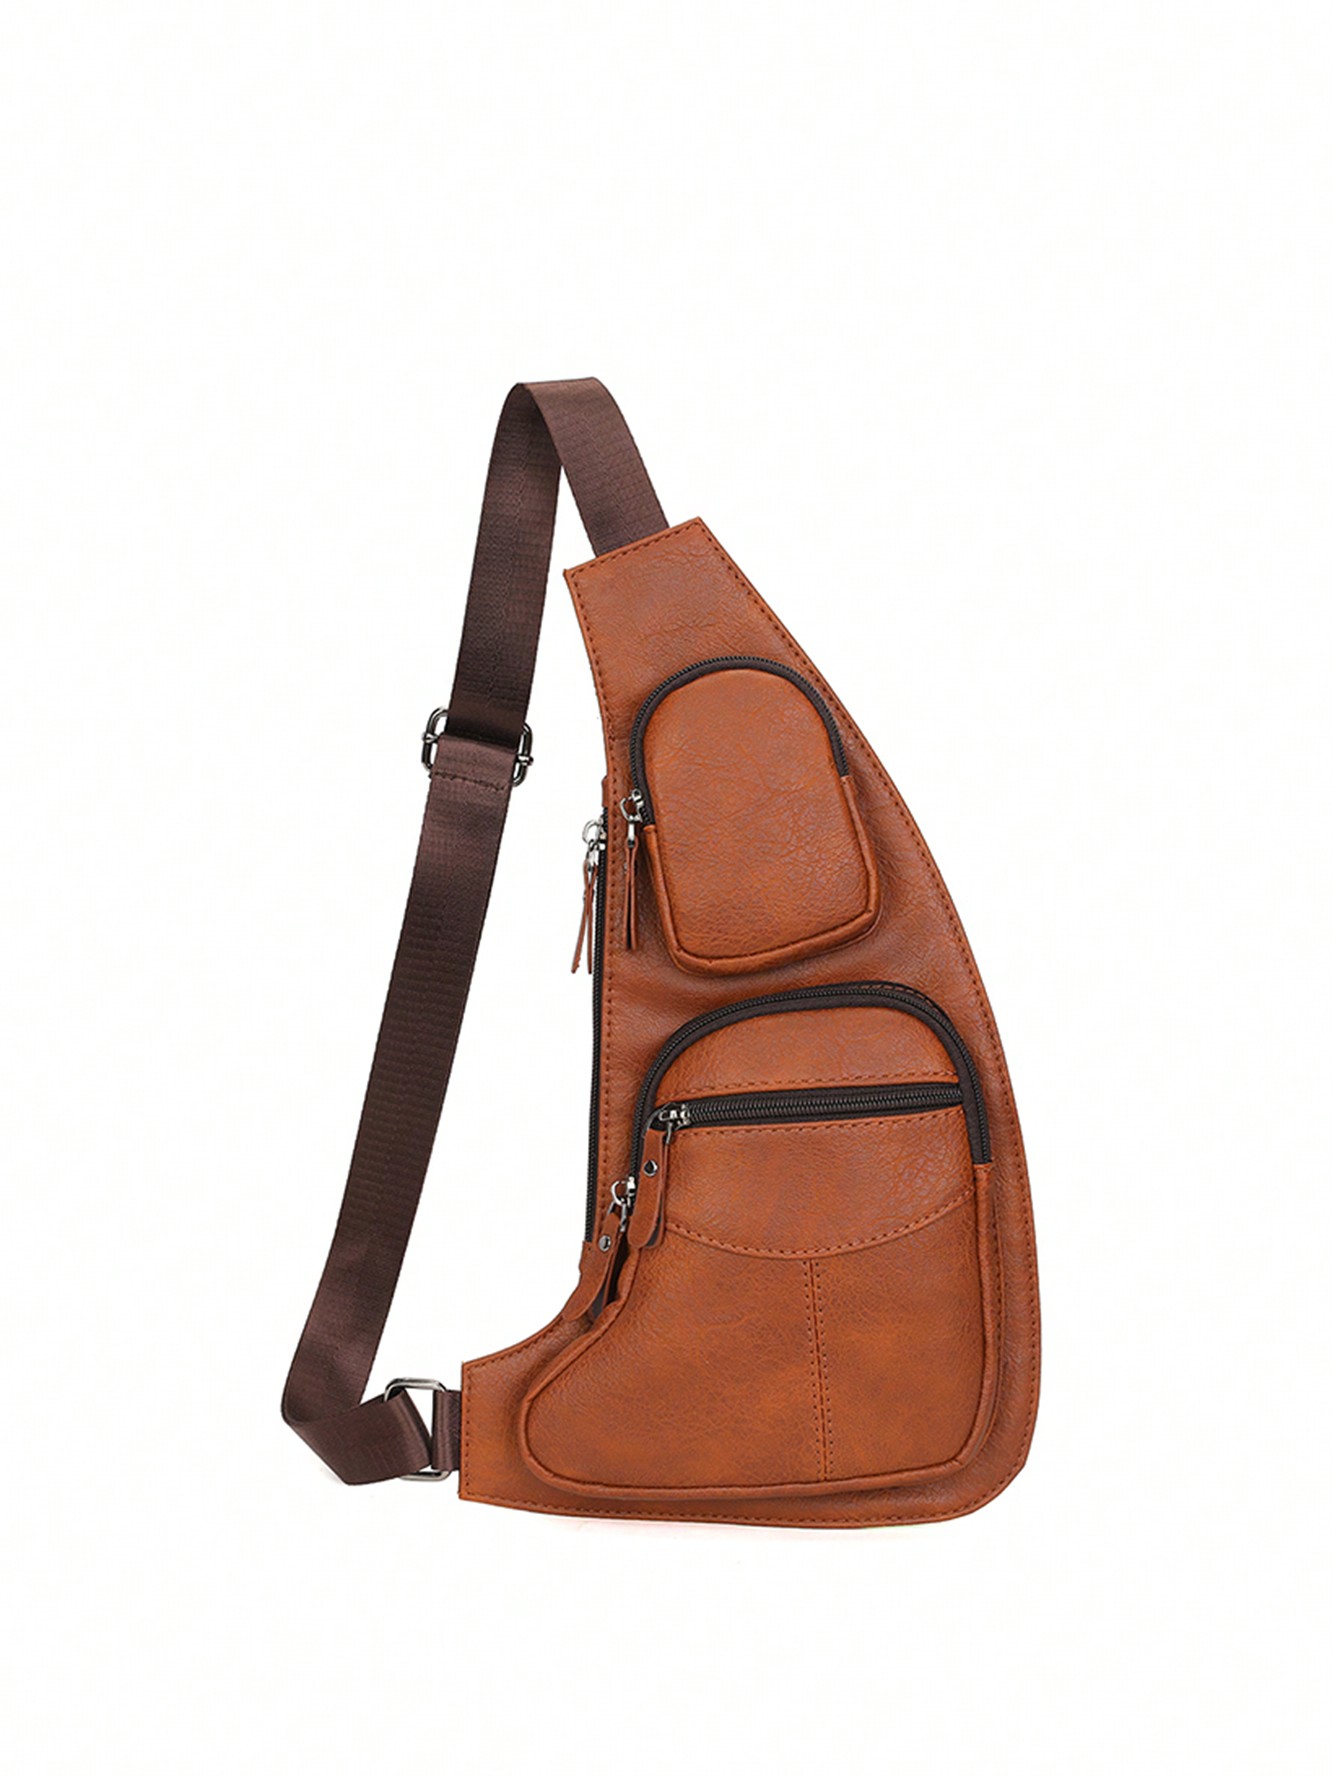 Мужская нагрудная сумка, коричневый новая популярная высококачественная кожаная мужская сумка мессенджер crazy horse модная простая роскошная кожаная сумка через плечо